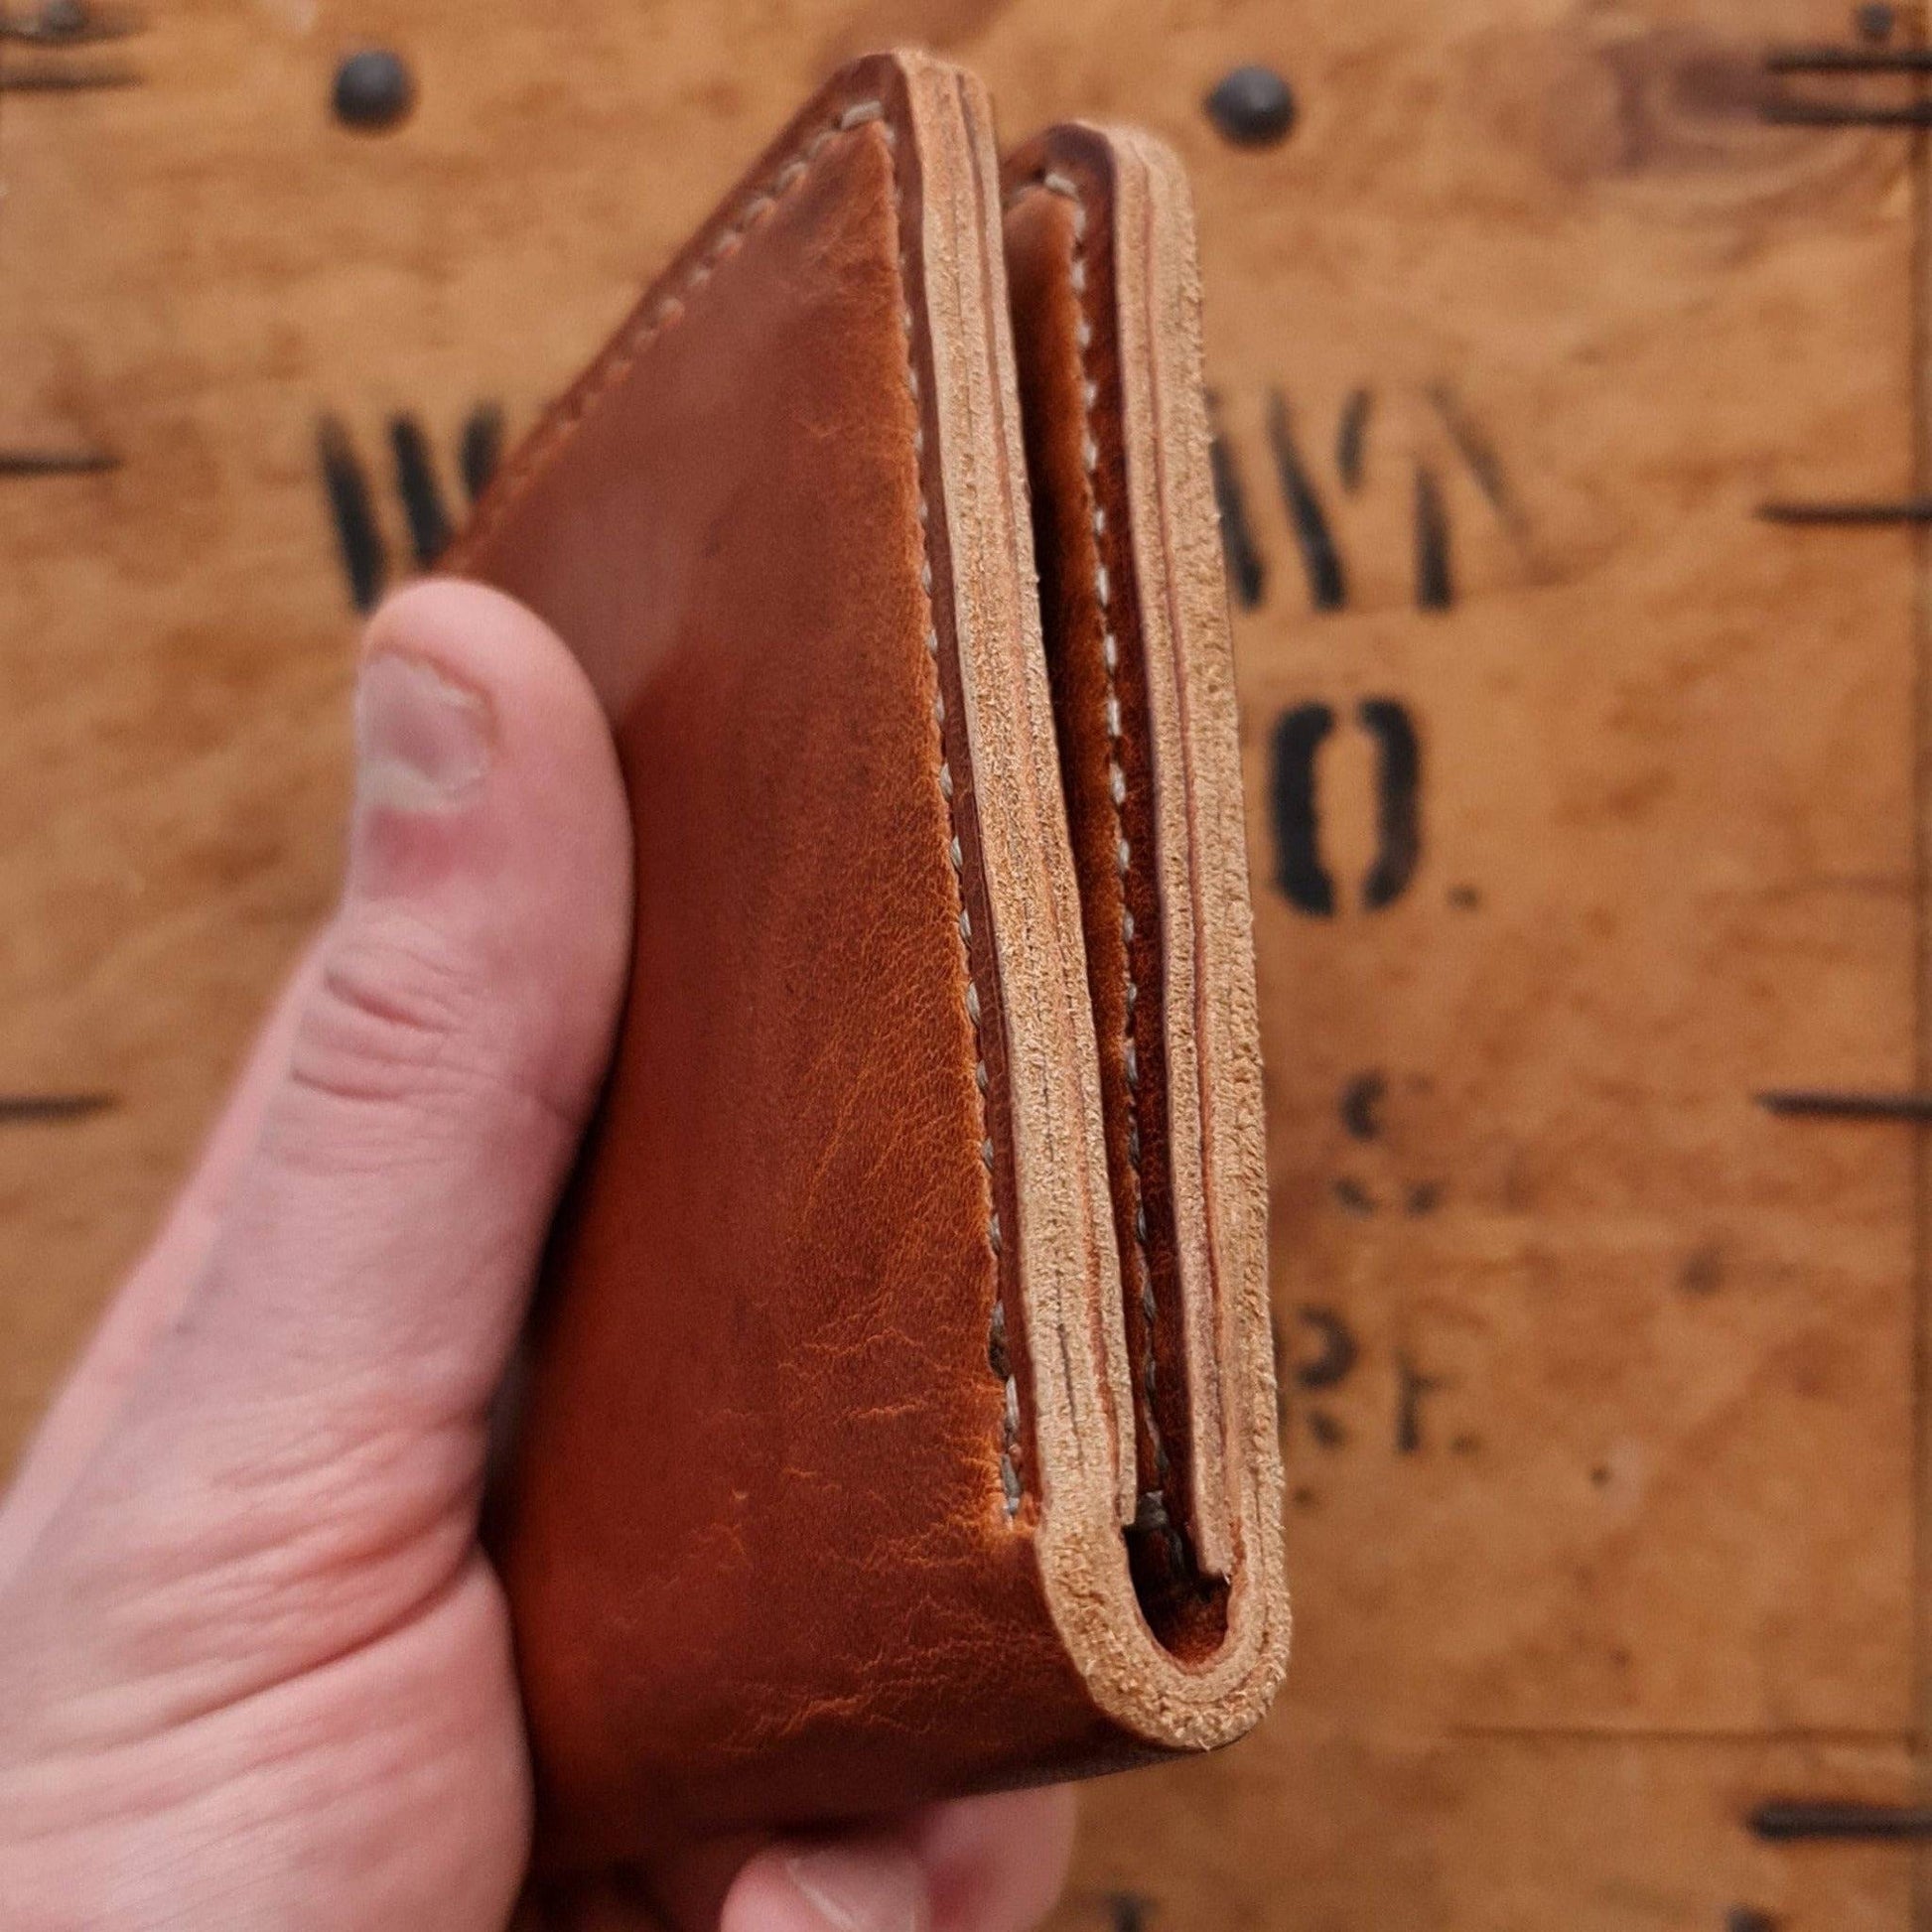 Men's Leather Wallet - Tan Wallet - Horween Dublin